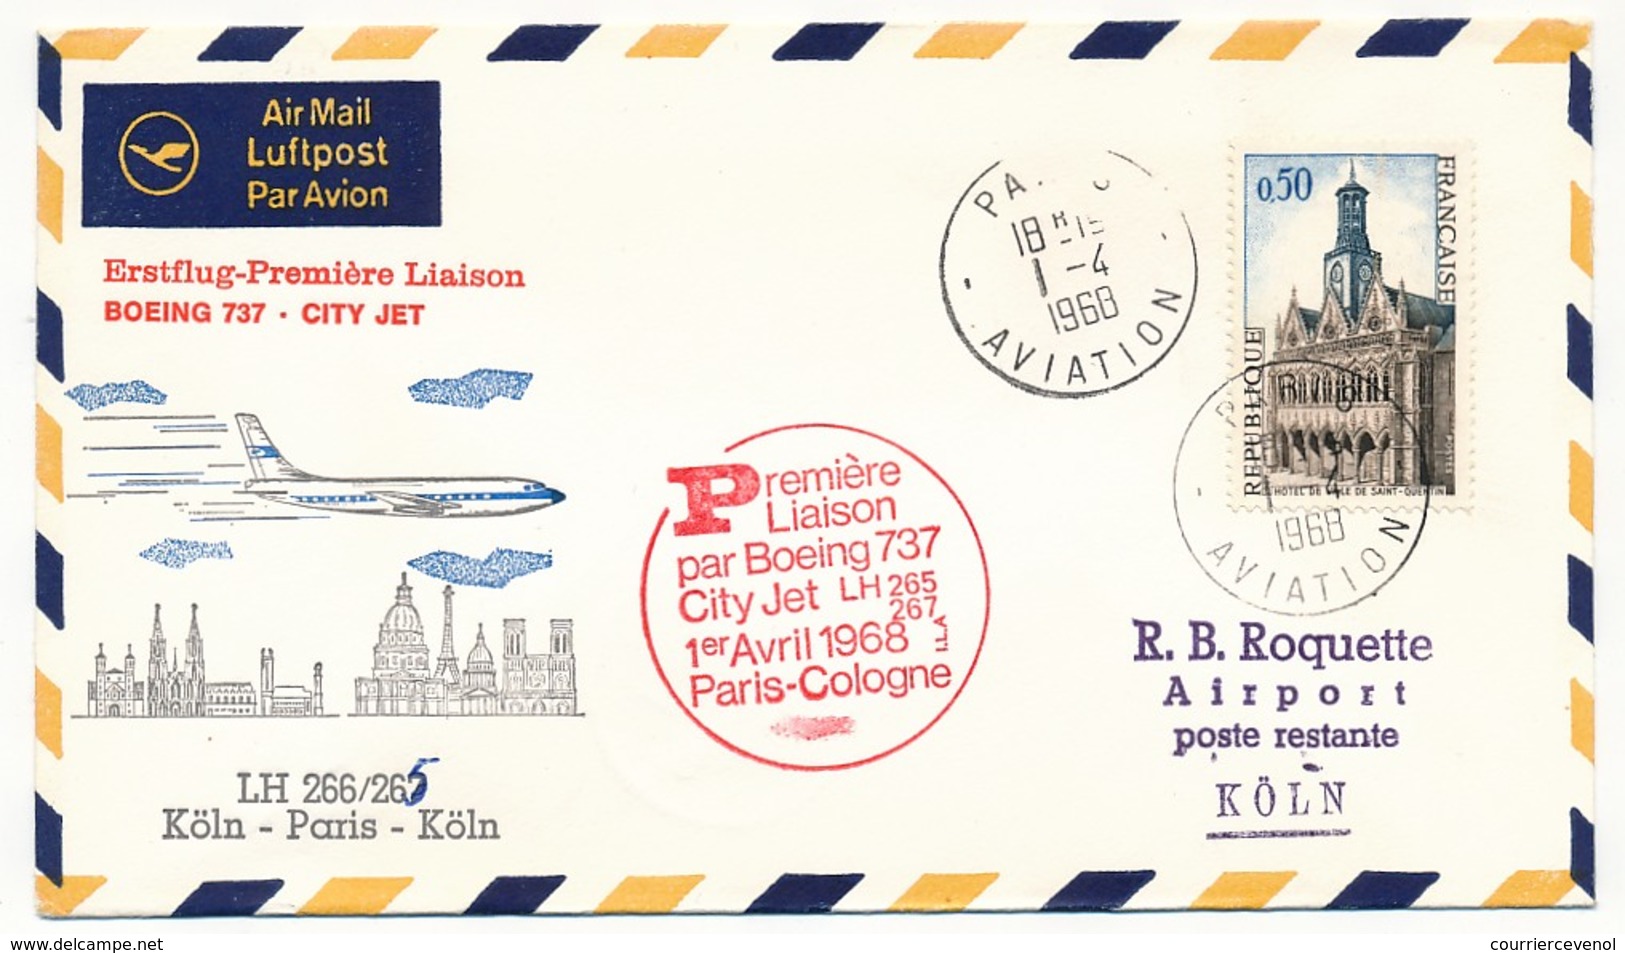 2 Enveloppes Première Liaison Boeing 737 City Jet LH 265/67 Paris Cologne Et Retour - 1er Avril 1968 - Premiers Vols